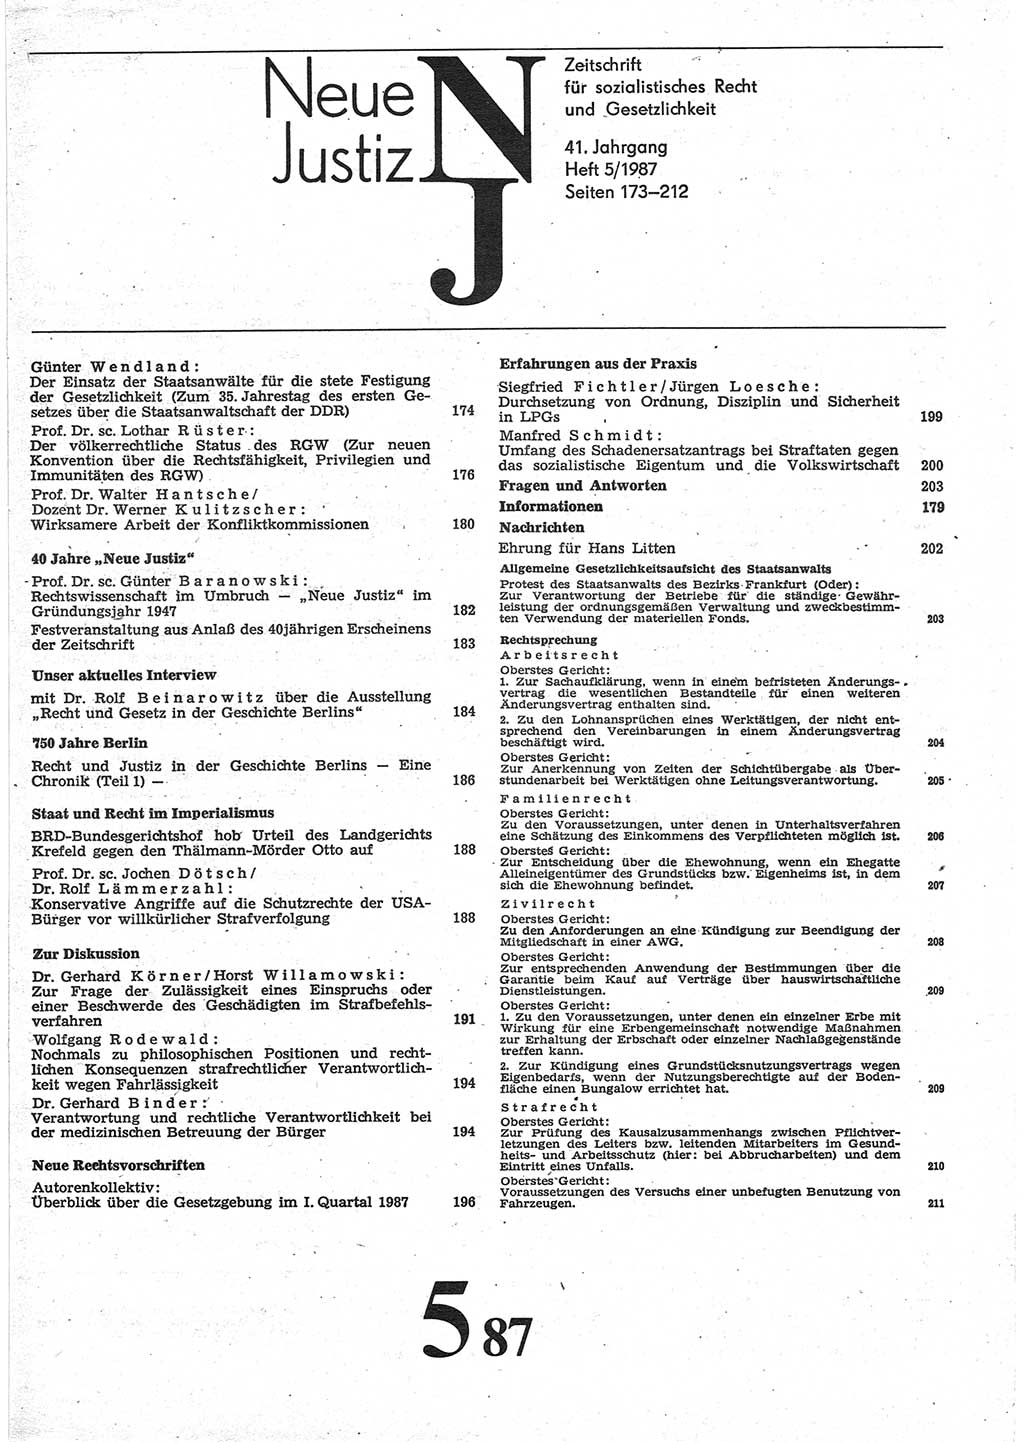 Neue Justiz (NJ), Zeitschrift für sozialistisches Recht und Gesetzlichkeit [Deutsche Demokratische Republik (DDR)], 41. Jahrgang 1987, Seite 173 (NJ DDR 1987, S. 173)